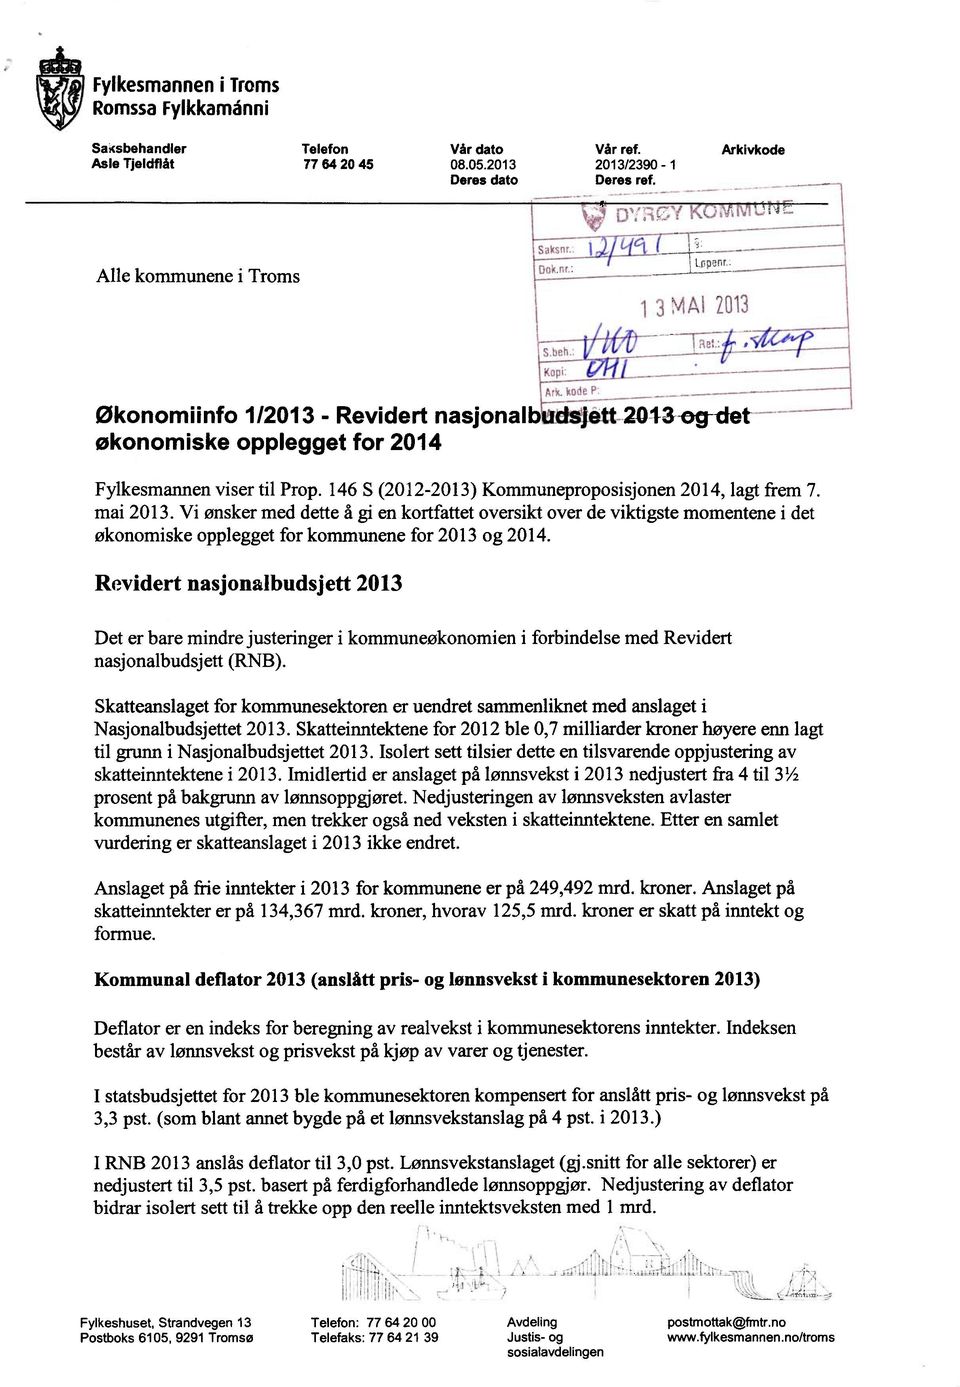 146 S (2012-2013) Kommuneproposisjonen 2014, lagt frem 7. mai 2013.